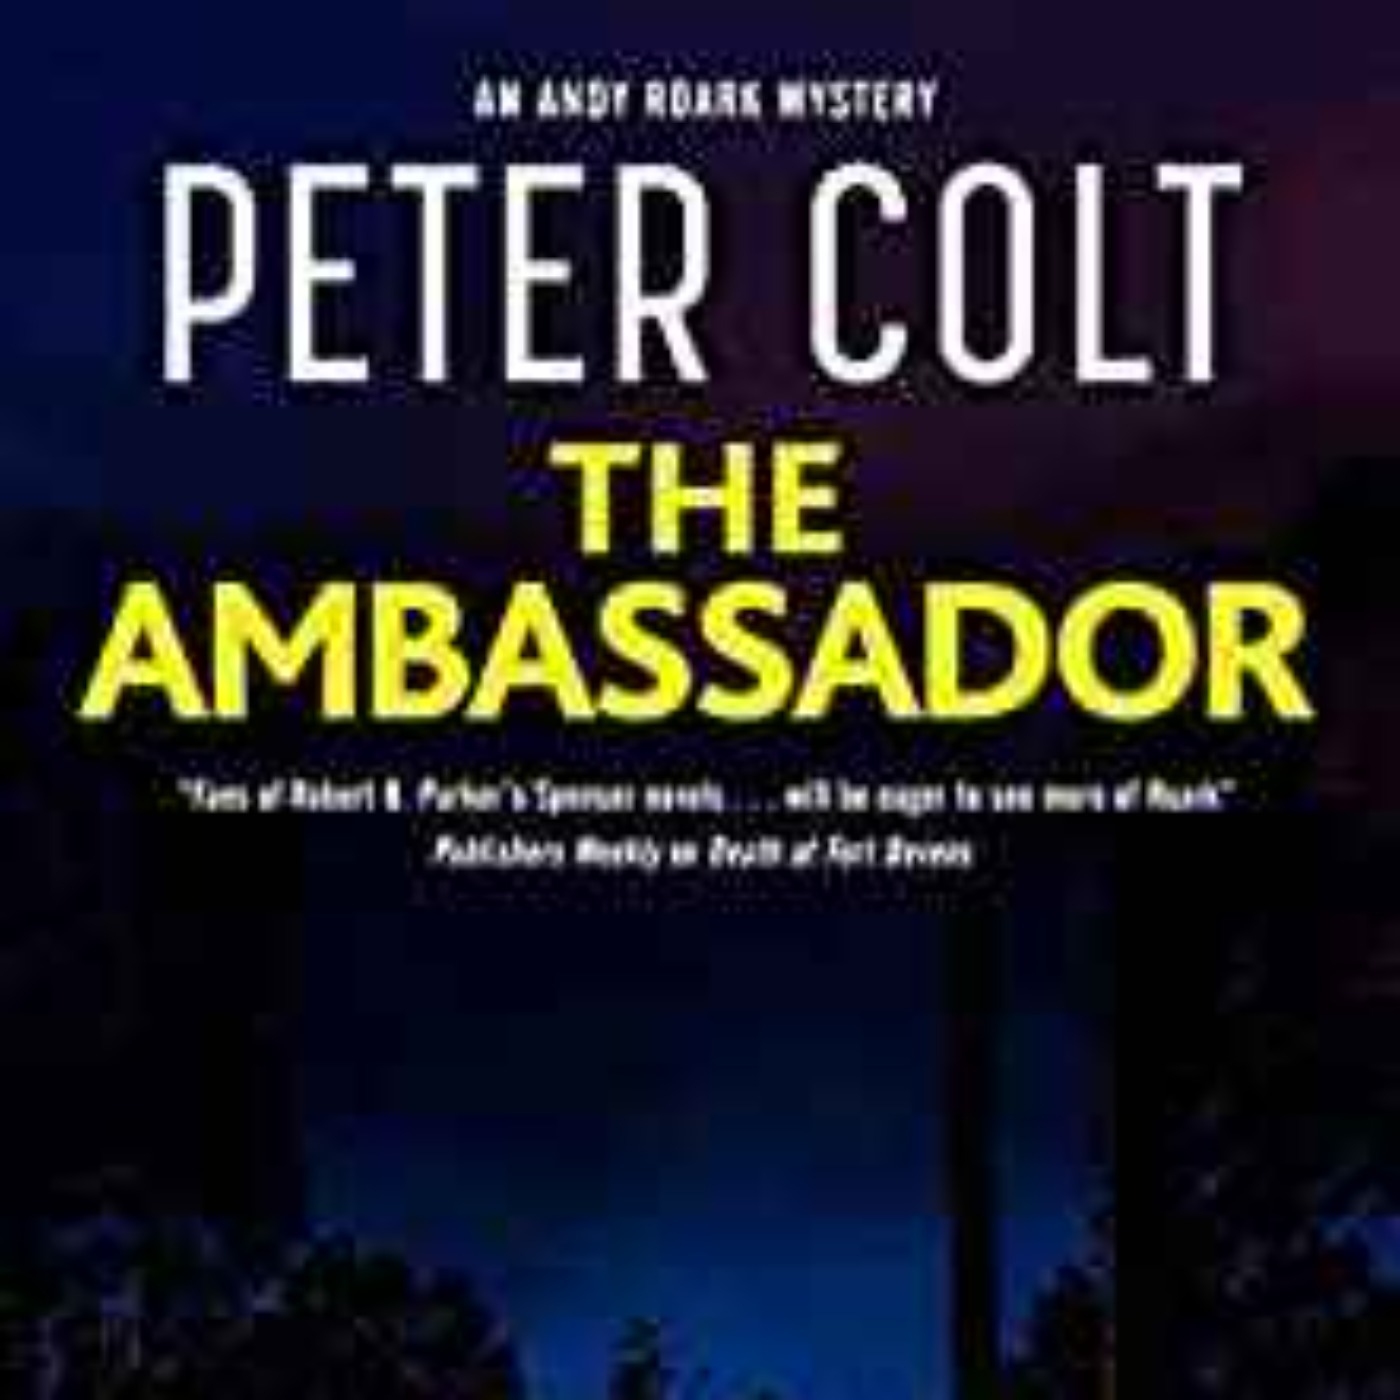 Peter Colt - The Ambassador (An Andy Roark mystery Book 4)